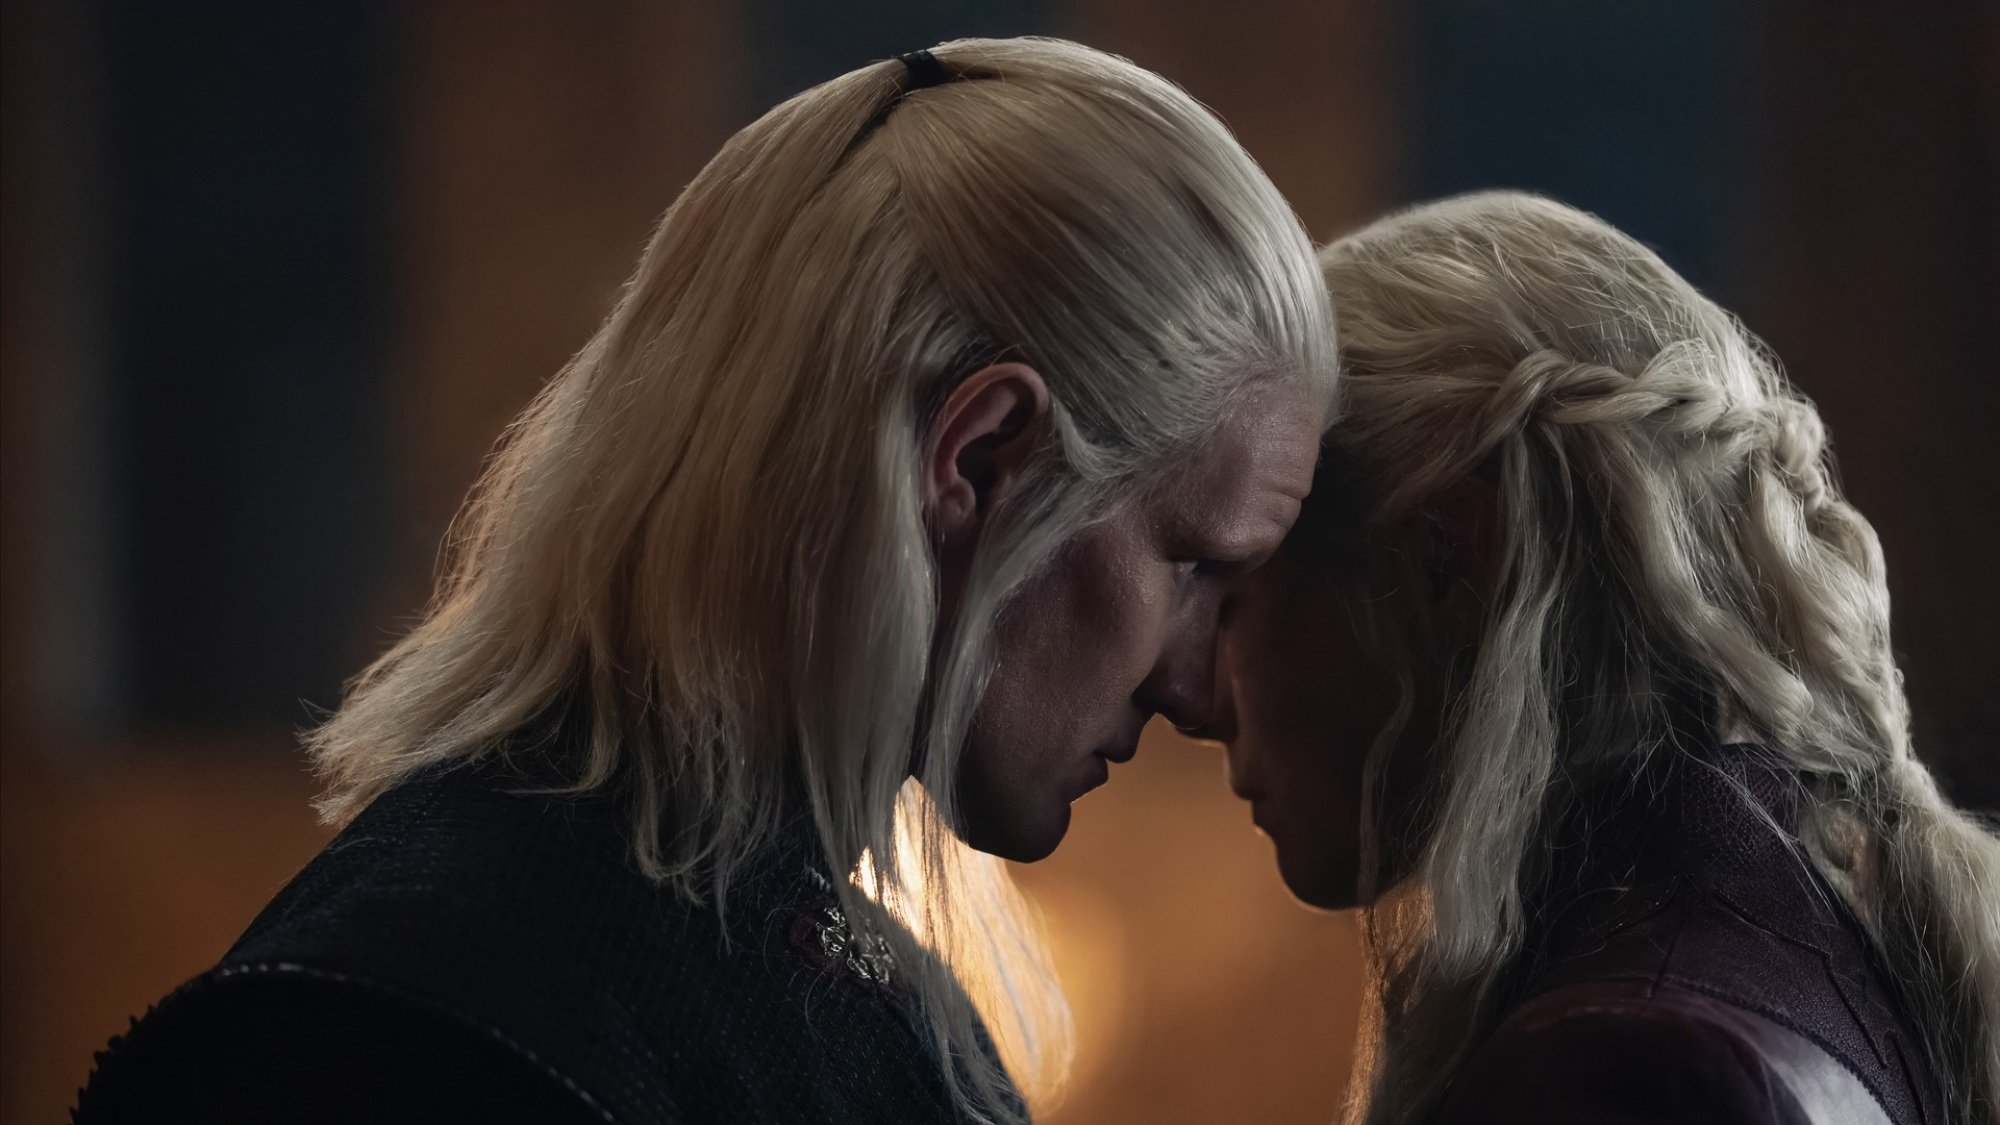 Daemon et Rhaenyra Targaryen parlent avec leurs visages très rapprochés.